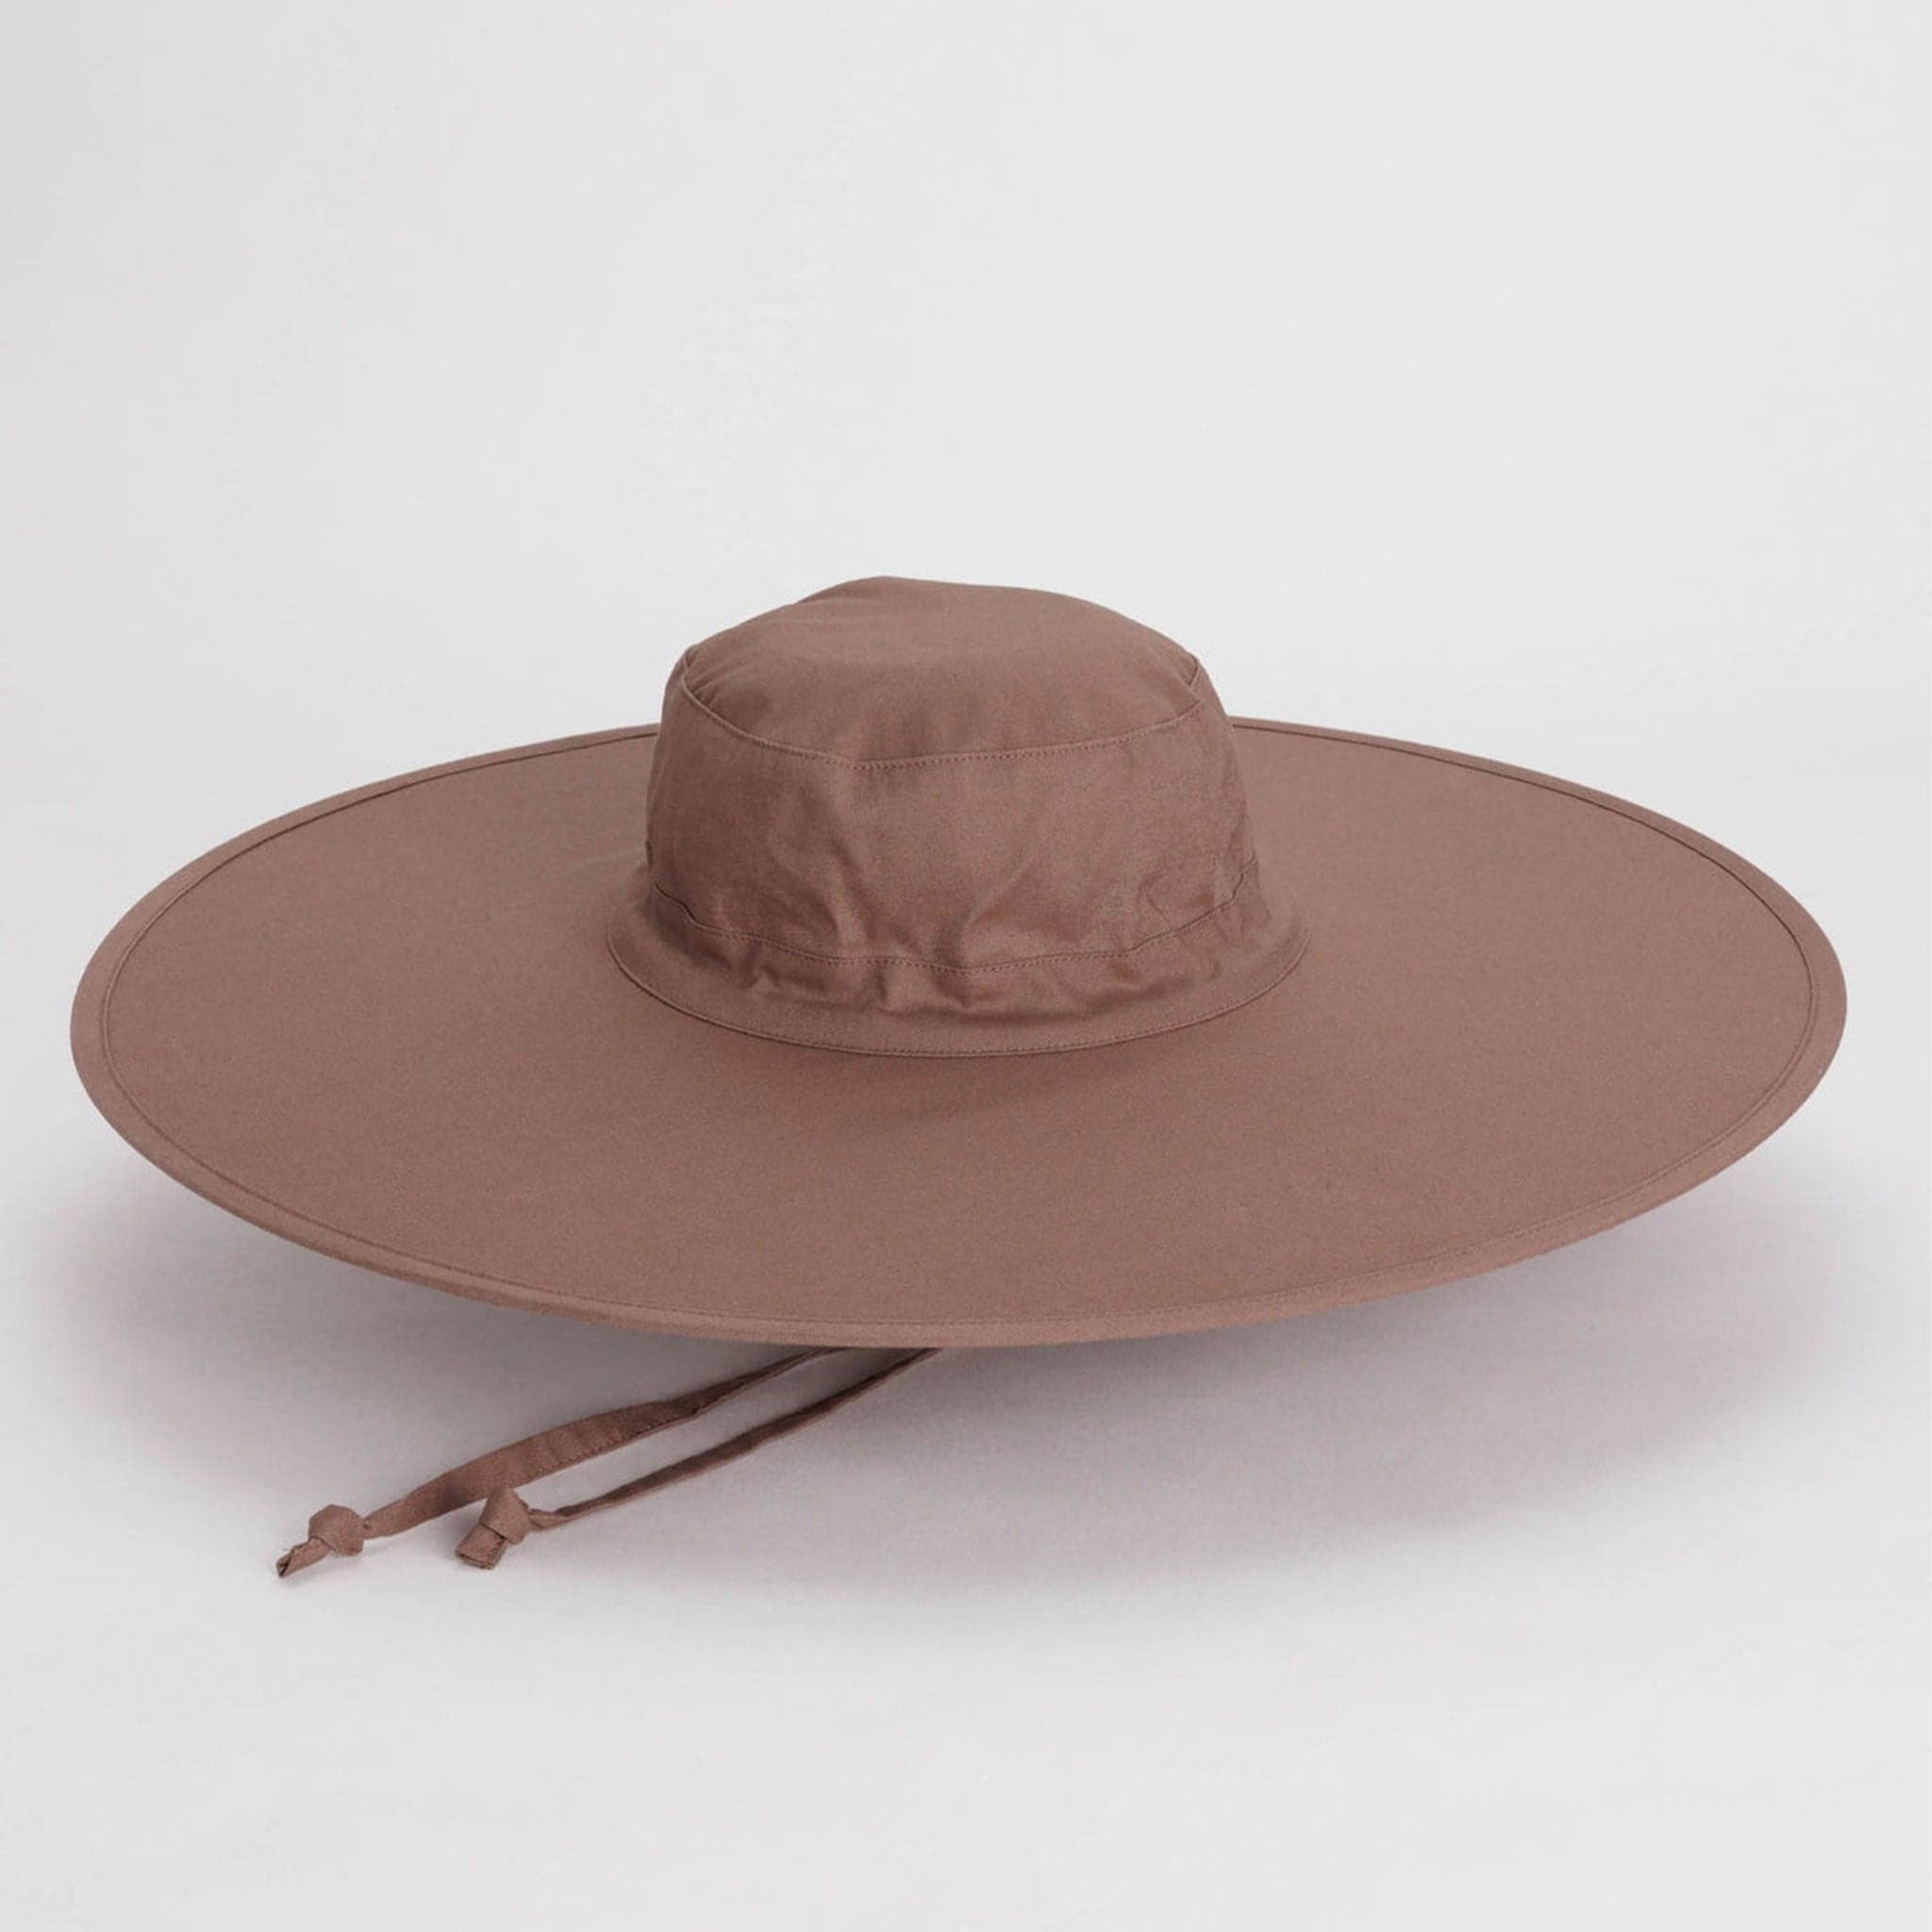 A purple / brown wide brim nylon hat with a neck strap.